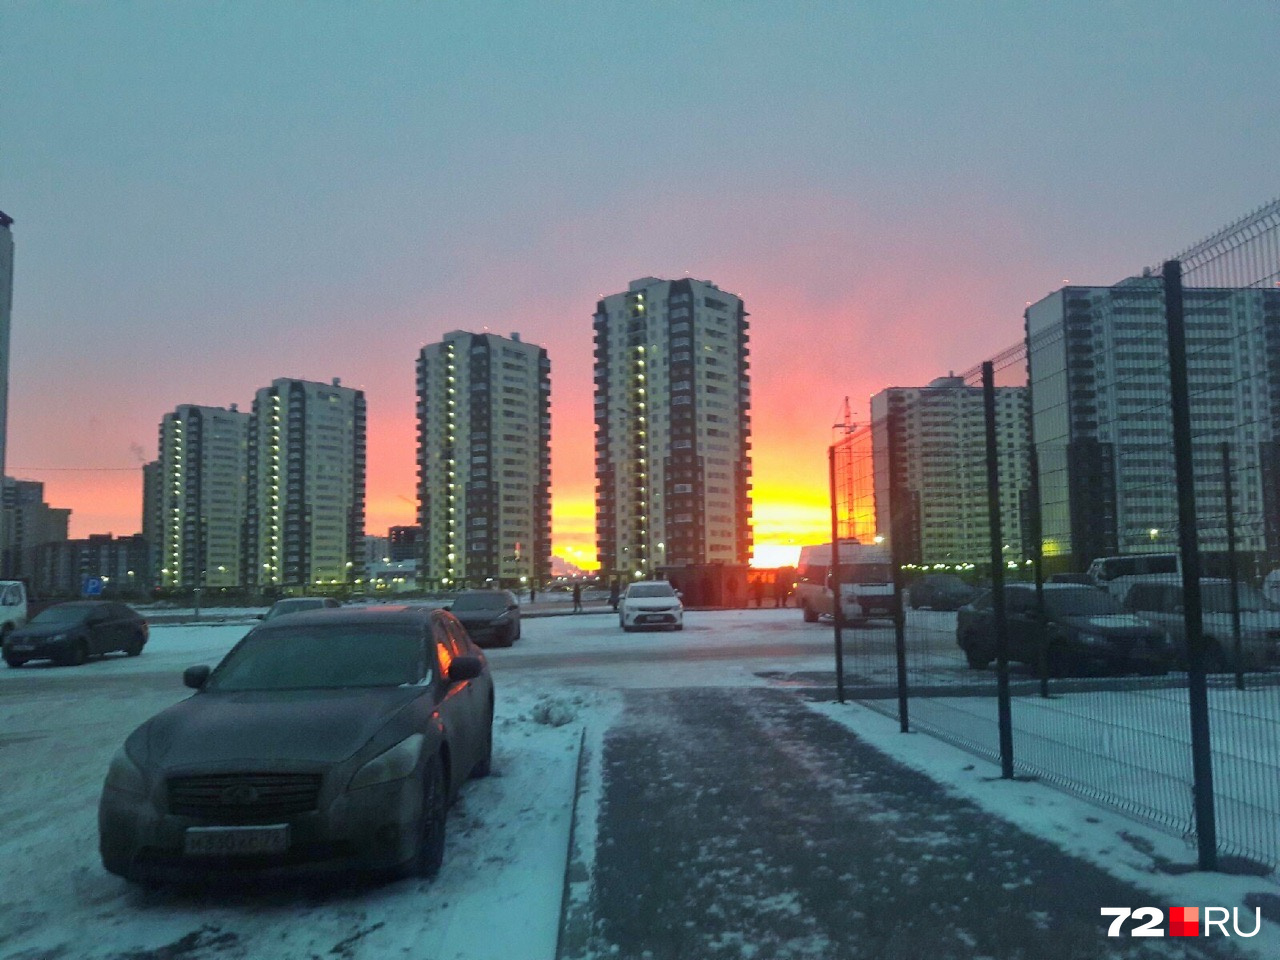 Не попустили красоту утреннего неба и журналисты 72.RU